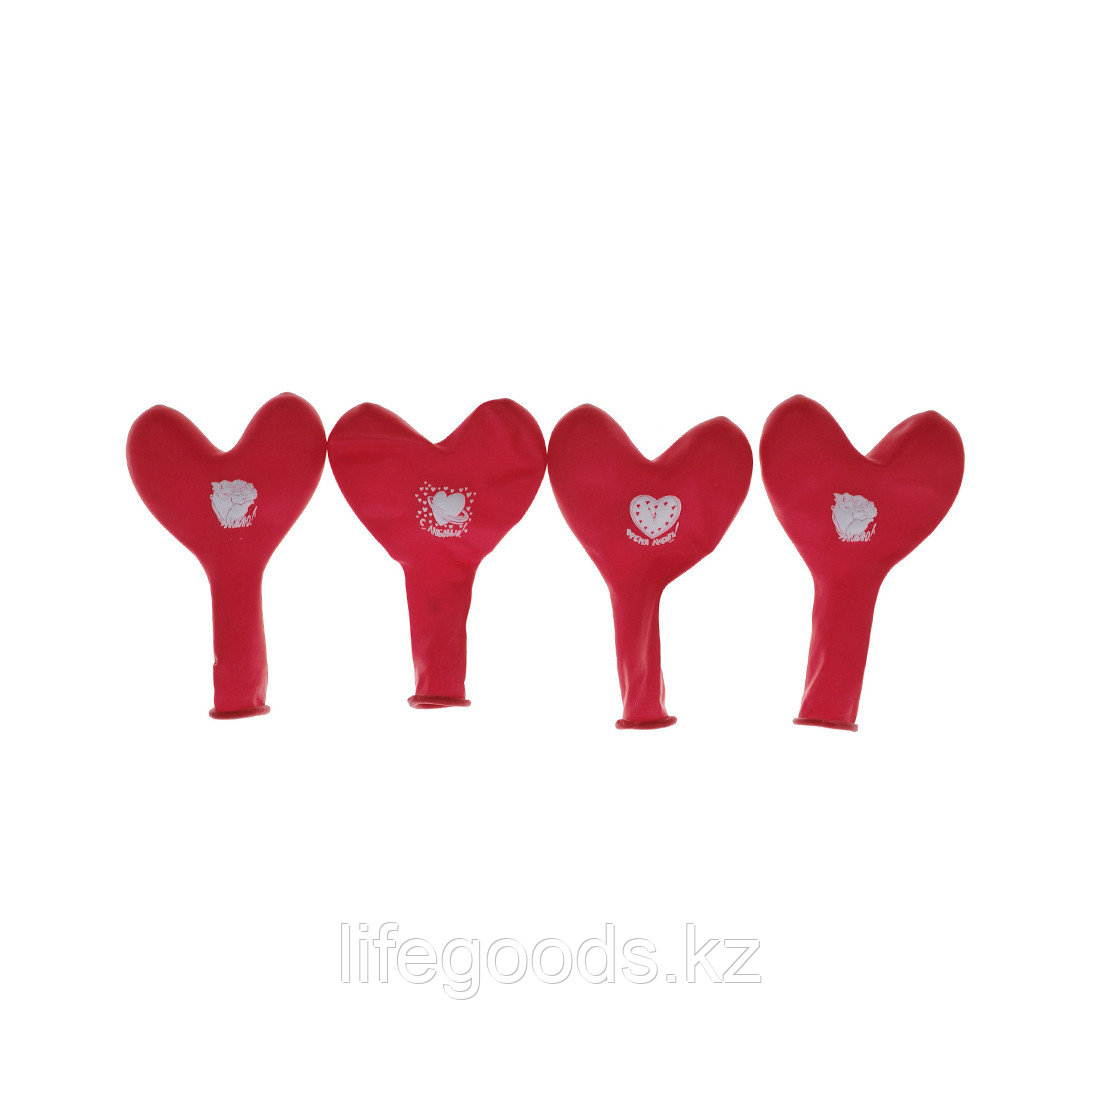 Воздушные шарики в форме сердца 1111-0362 (4 шт. в пакете)